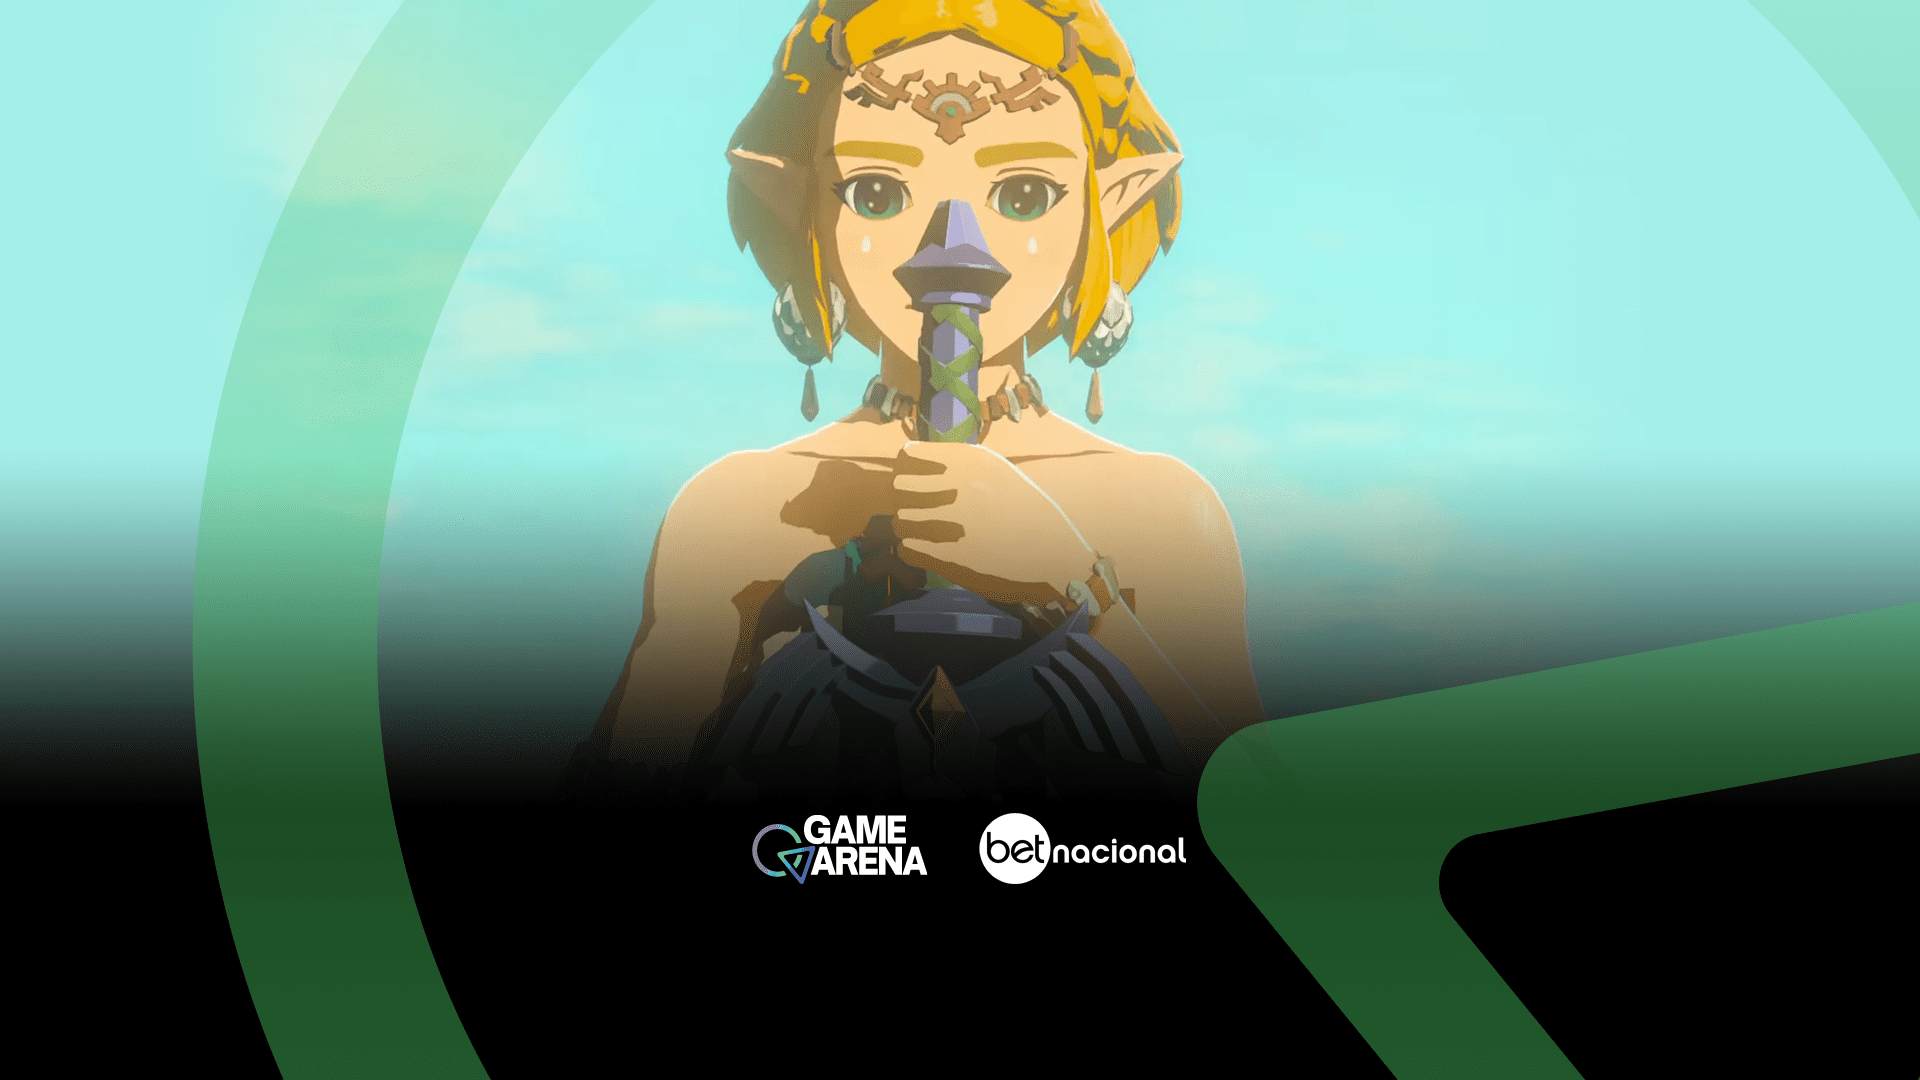 Nintendo Treehouse: Live — The Legend of Zelda: Tears of the Kingdom 